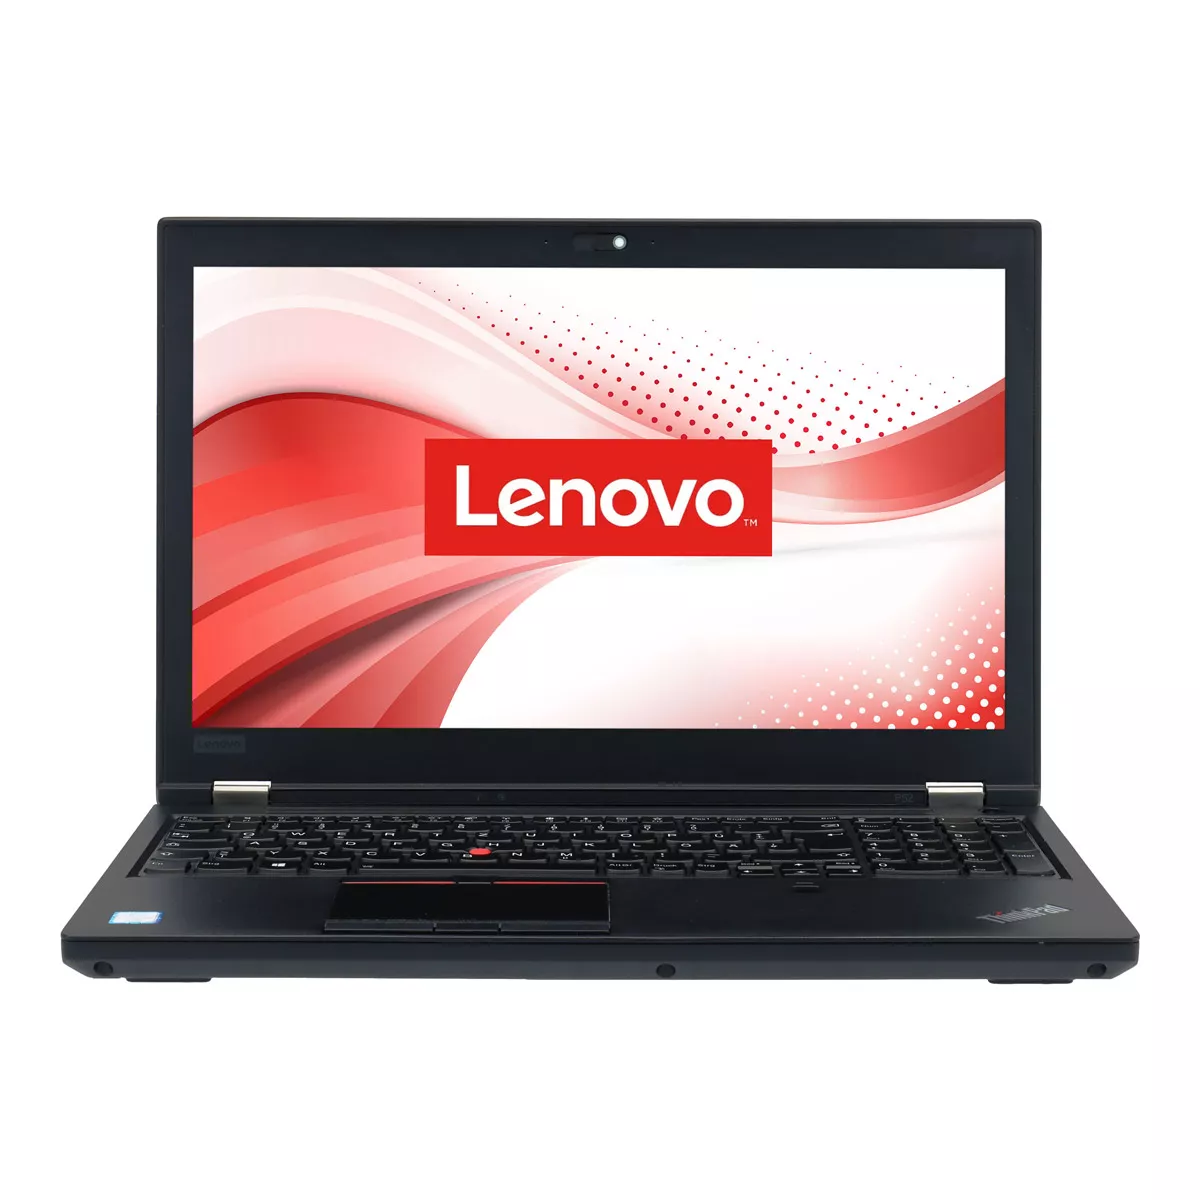 Lenovo ThinkPad P52 Core i7 8850H nVidia Quadro P3200M 32 GB 500 GB M.2 SSD Webcam A+